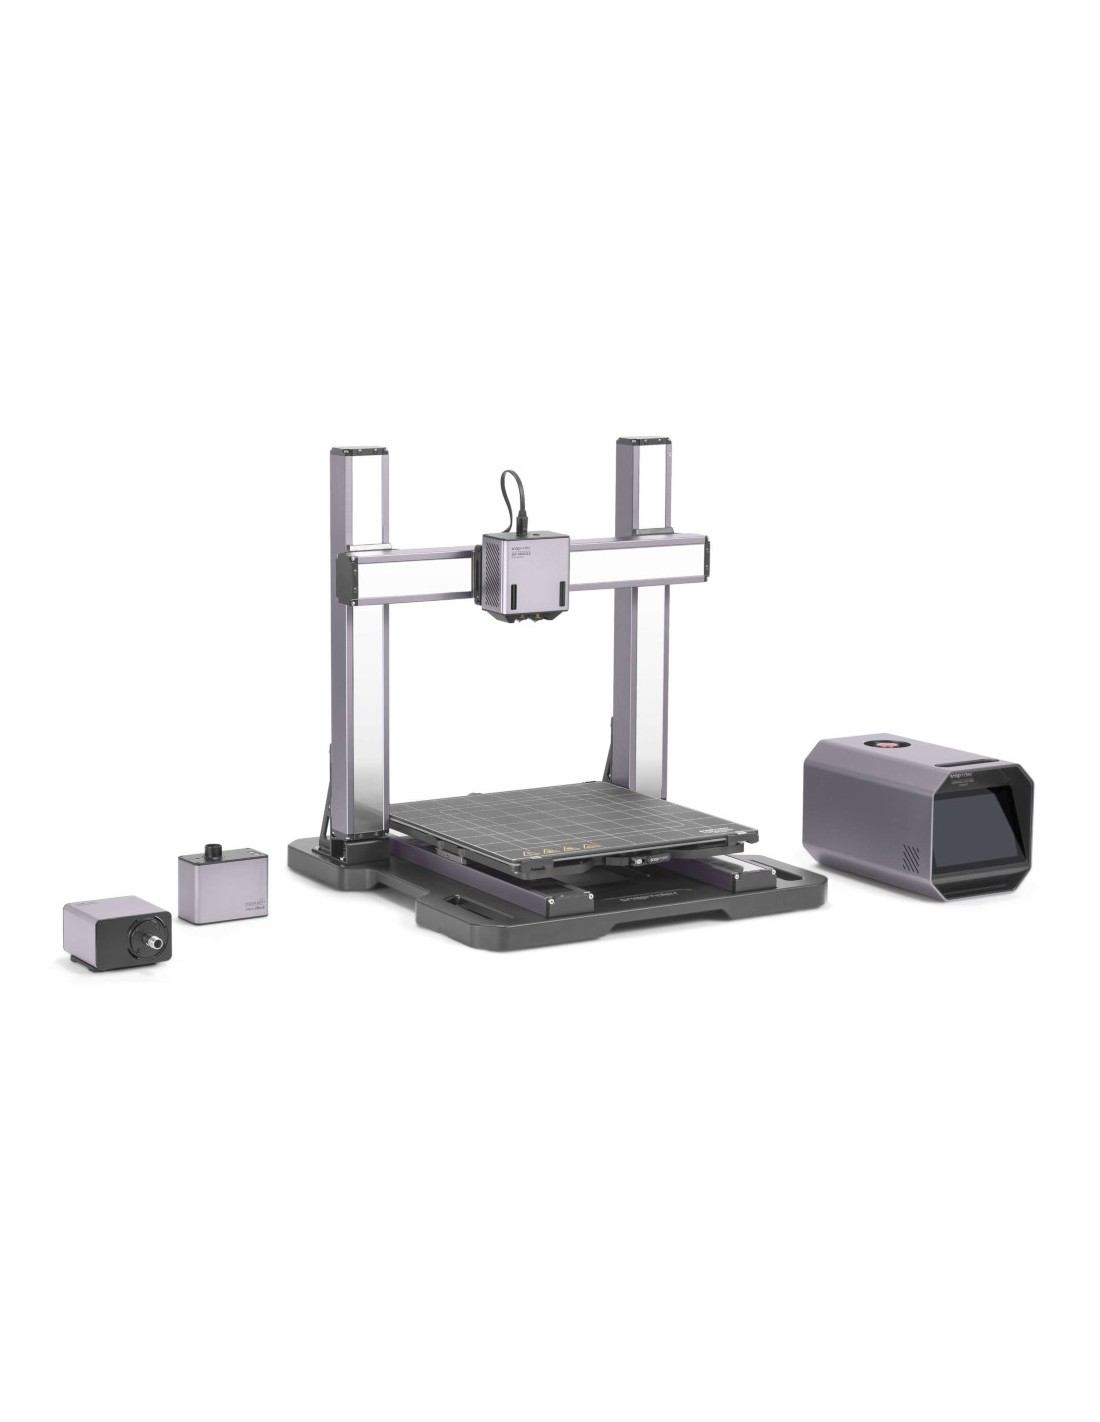 Snapmaker Artisan 3-en-1 - impresora 3D, fresadora CNC, máquina de grabado y corte láser 40W